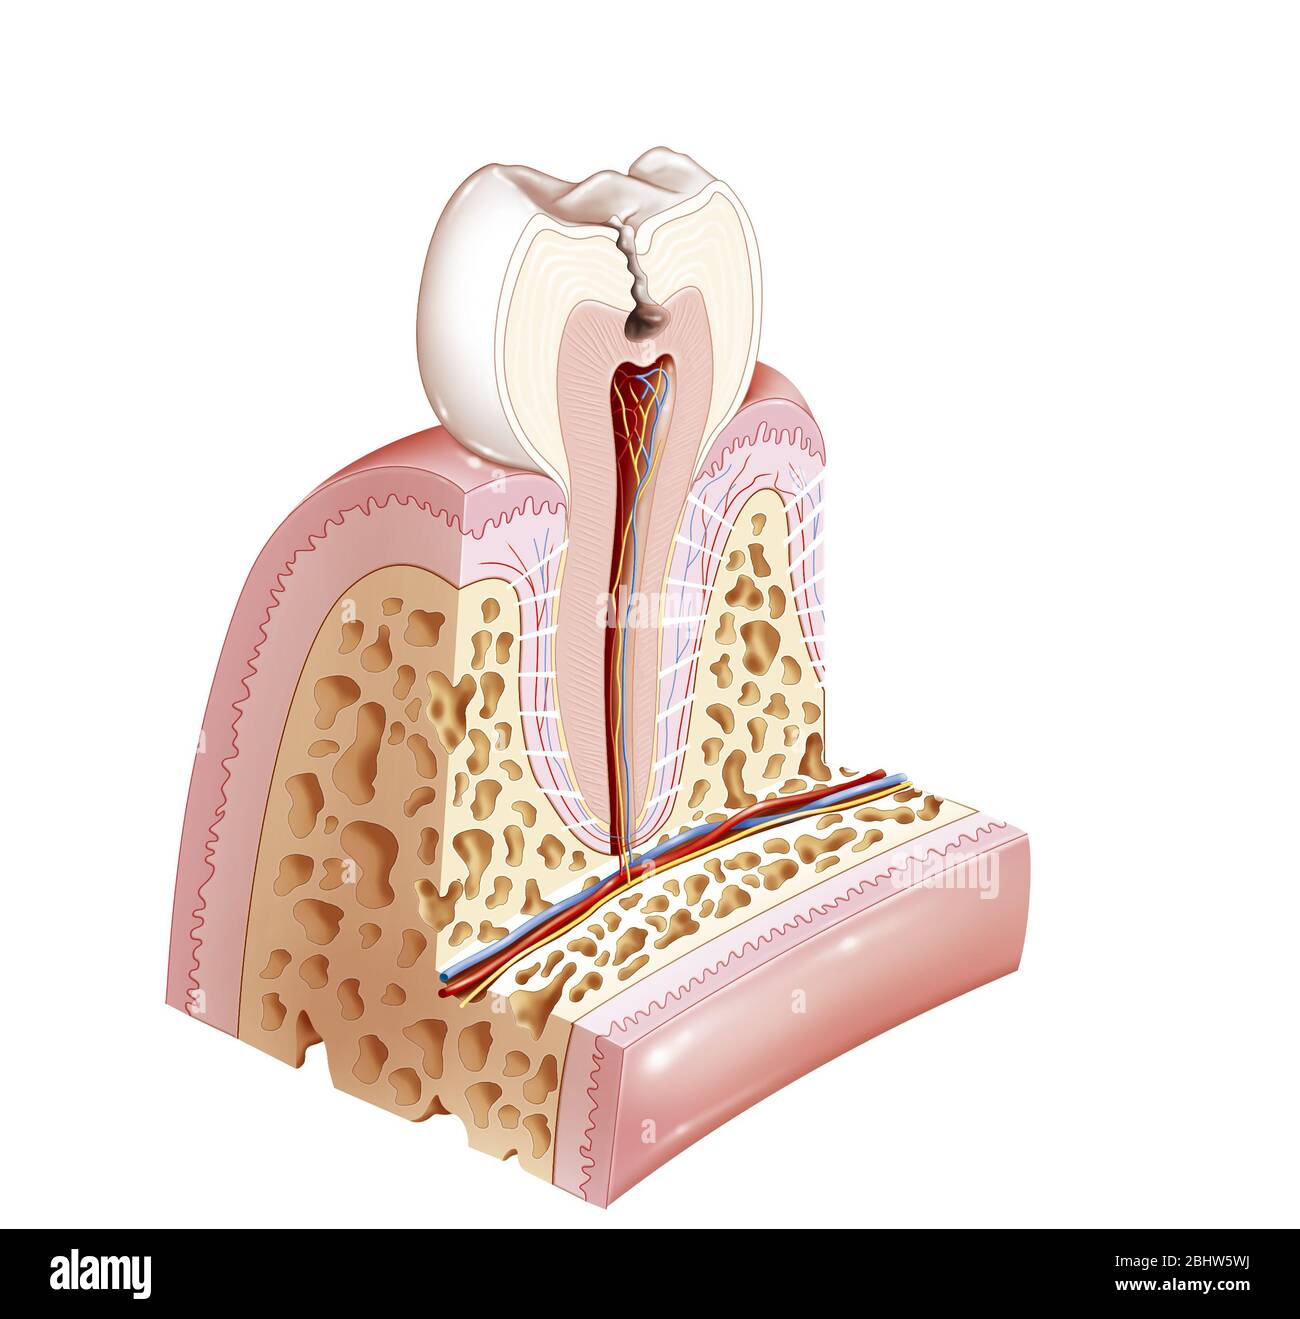 Dente decolorato con danno della dentina. Dentina è la zona indicata in beige rosato. Qui siamo nella fase 2 del dente che è influenzato dalla carie del dente. Questo io Foto Stock